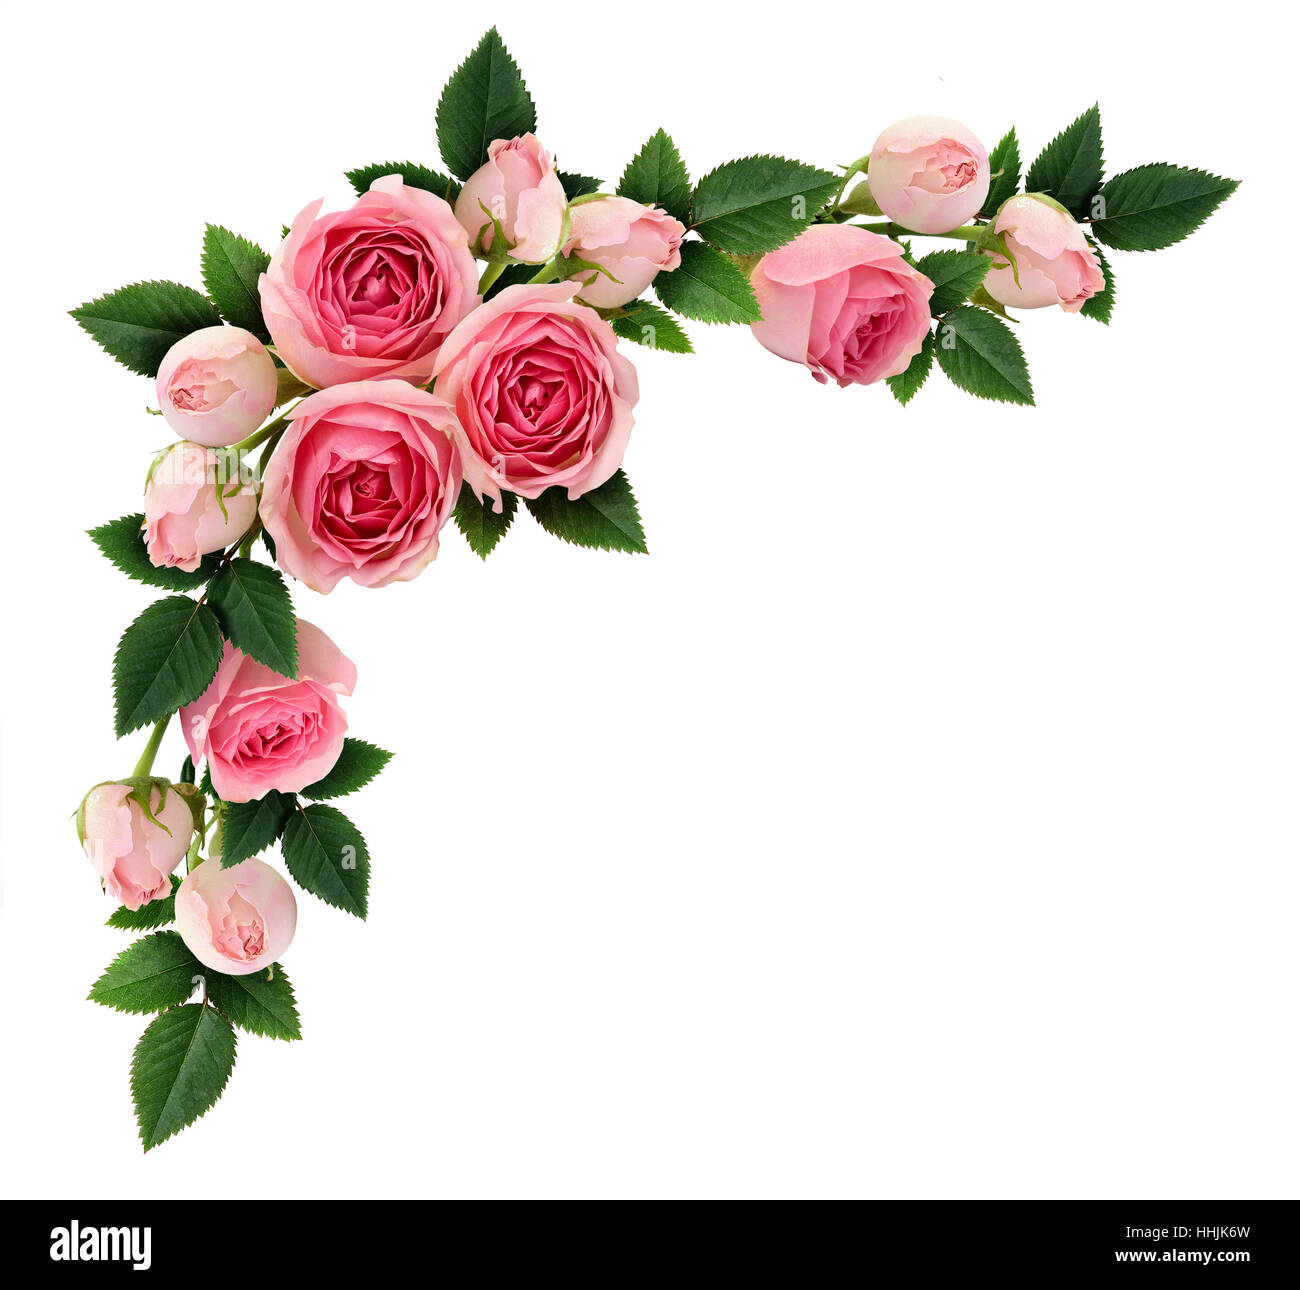 Rosa Rosen-Blumen und Knospen Ecke Anordnung isoliert auf weiss. Flach